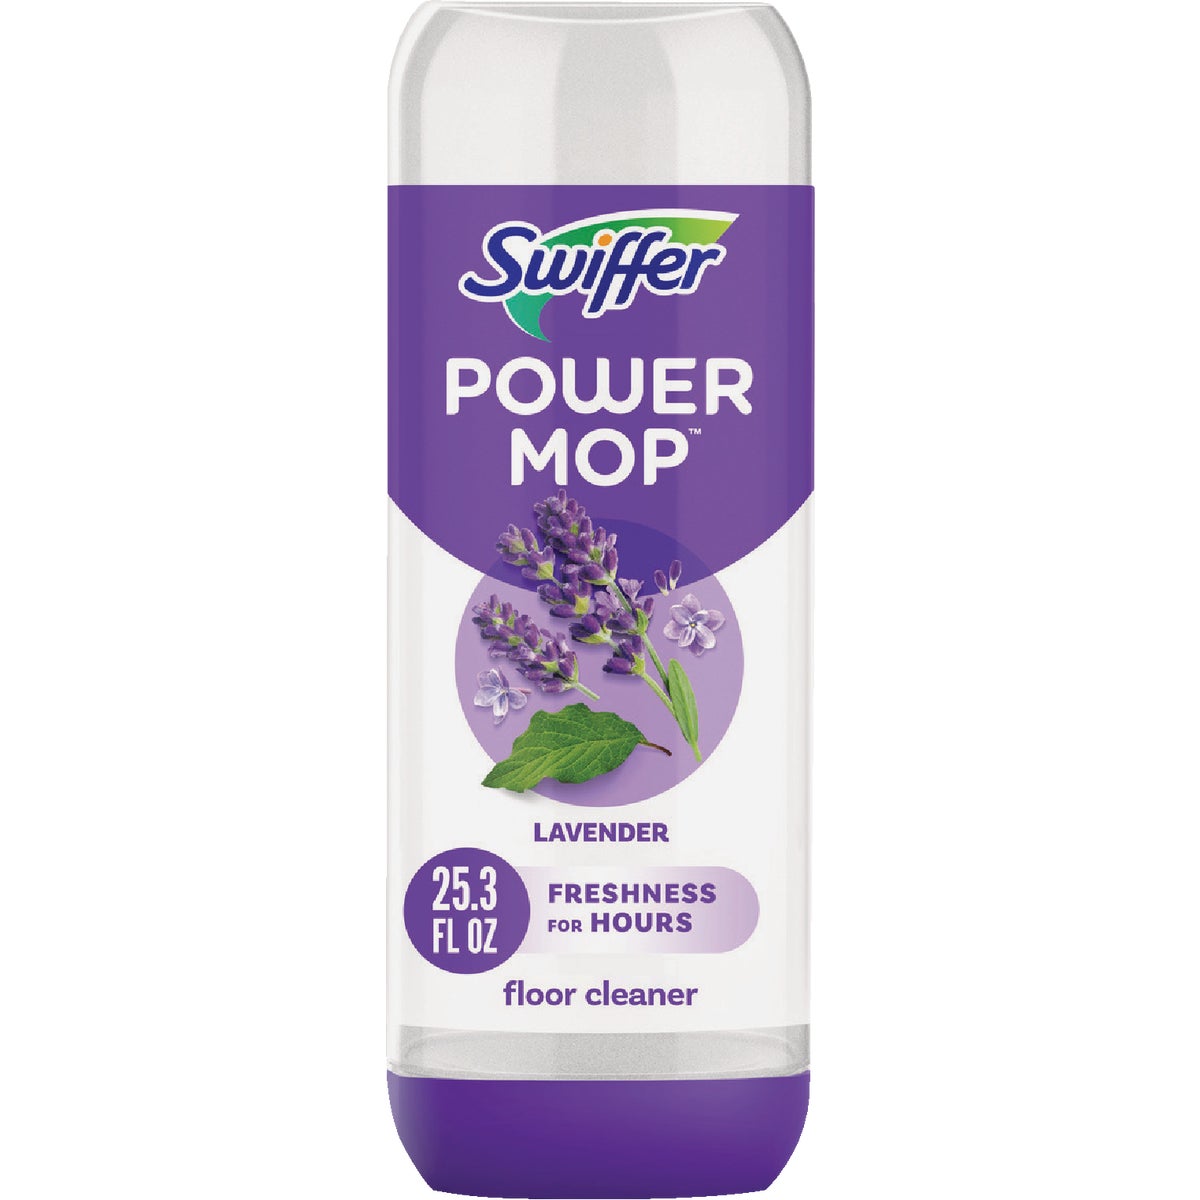 Swiffer PowerMop 25.3 Oz. Lavender Floor Cleaner